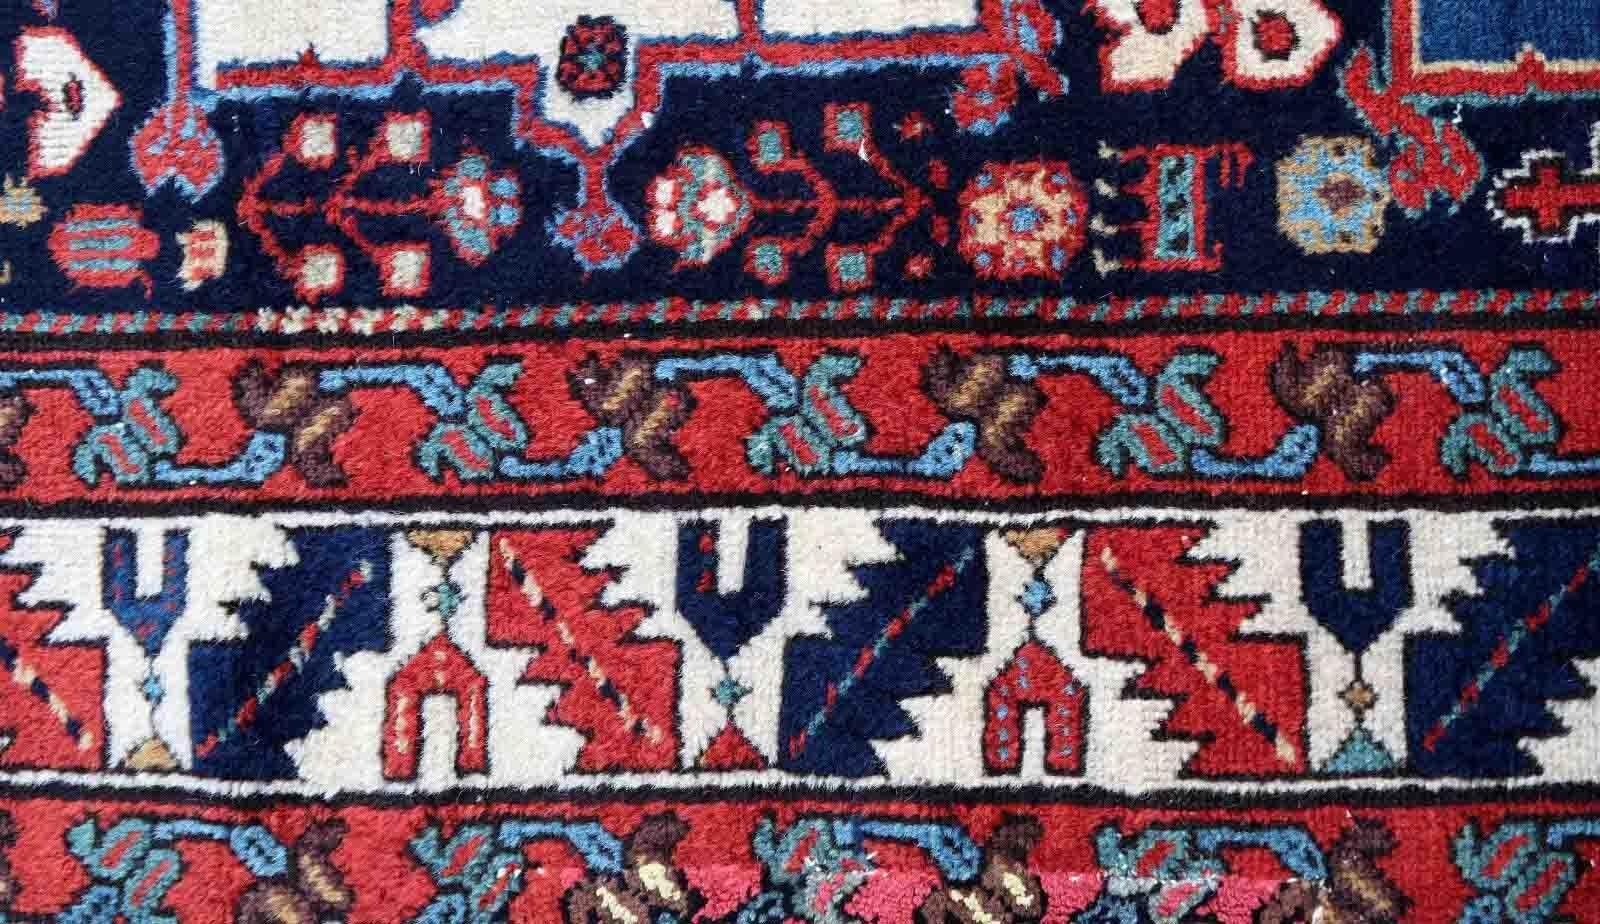 Tapis Karajeh ancien fait à la main dans des couleurs vives. Ce tapis de collection est du milieu du 19ème siècle en état original, il a quelques anciennes restaurations.

-condition : bonne, quelques anciennes restaurations,

-circa :